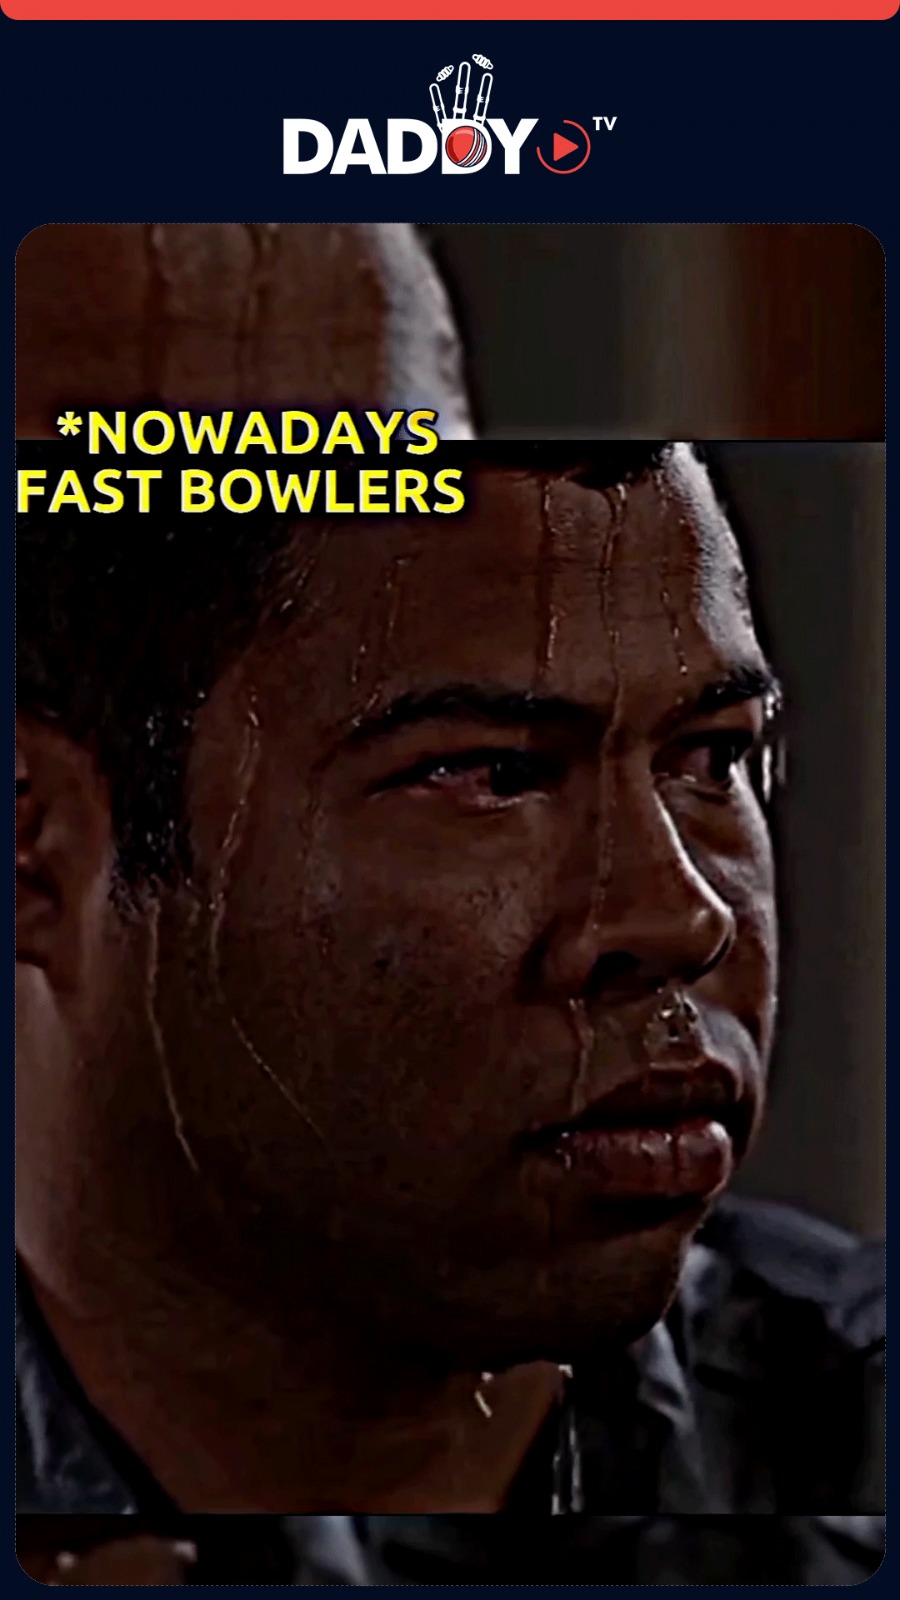 DADDYTV – Fastest Bowl By Spinner 😮🤨